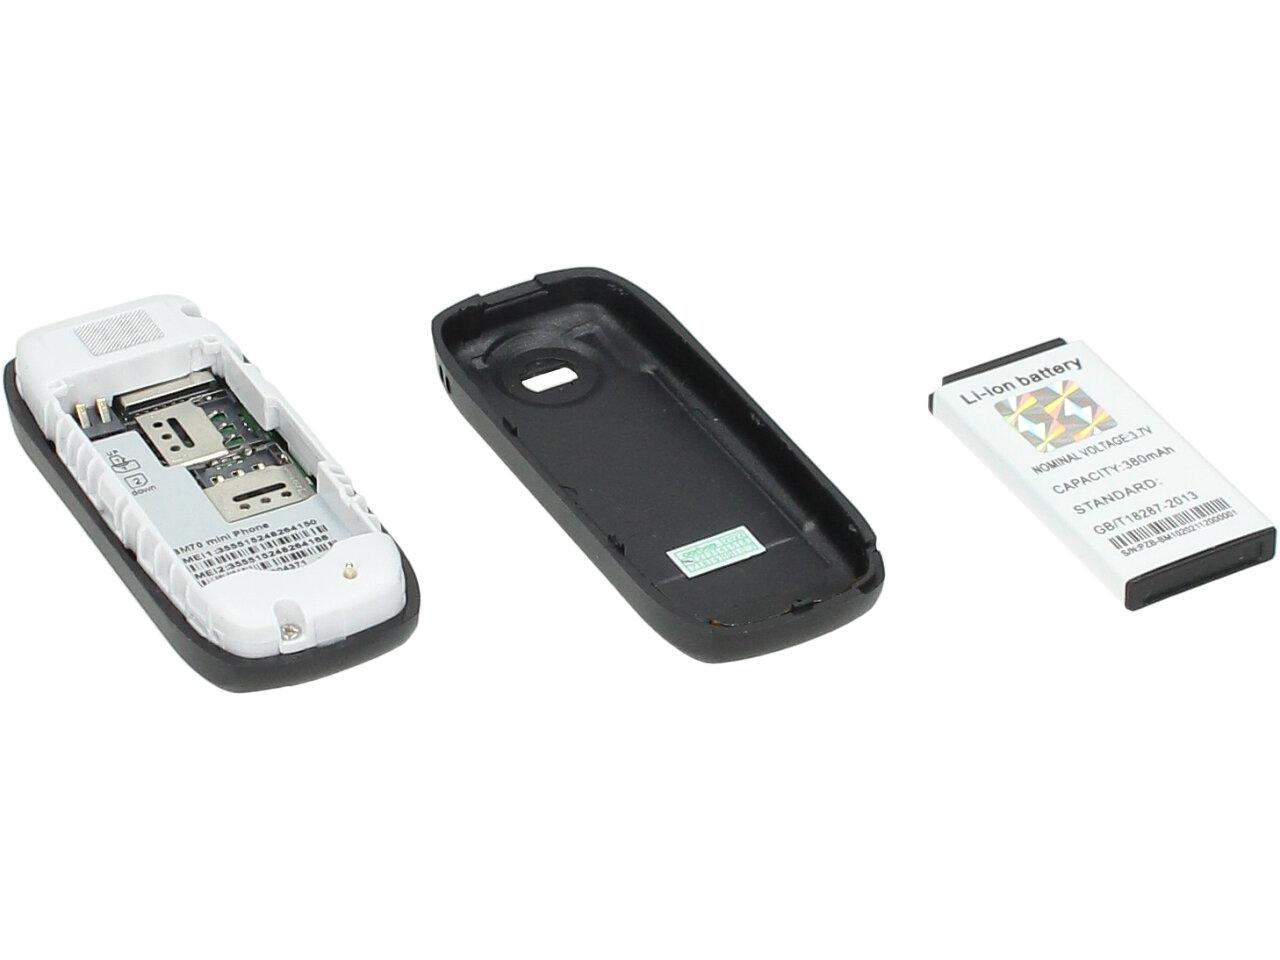 Mini mobilní telefon BM70 dual SIM